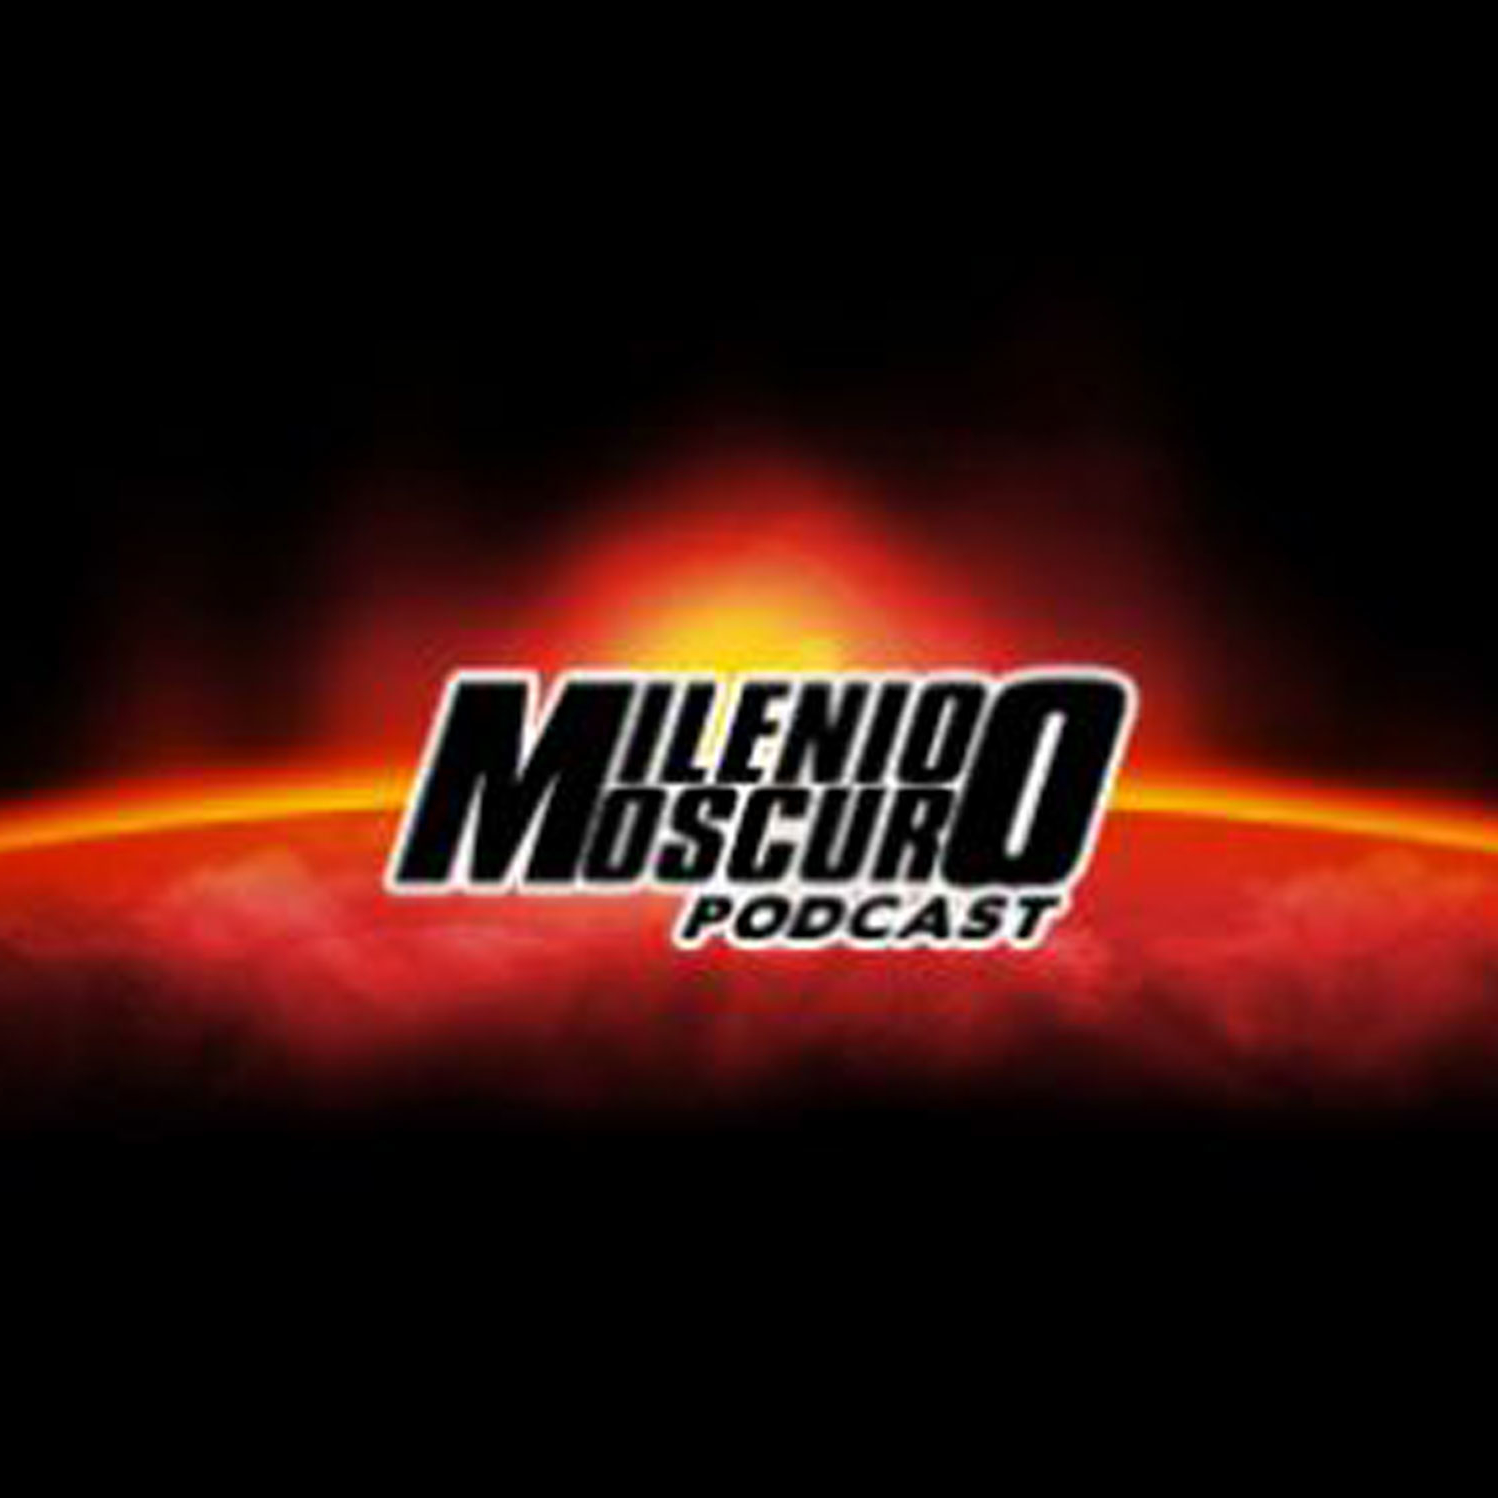 Milenio Oscuro Podcast